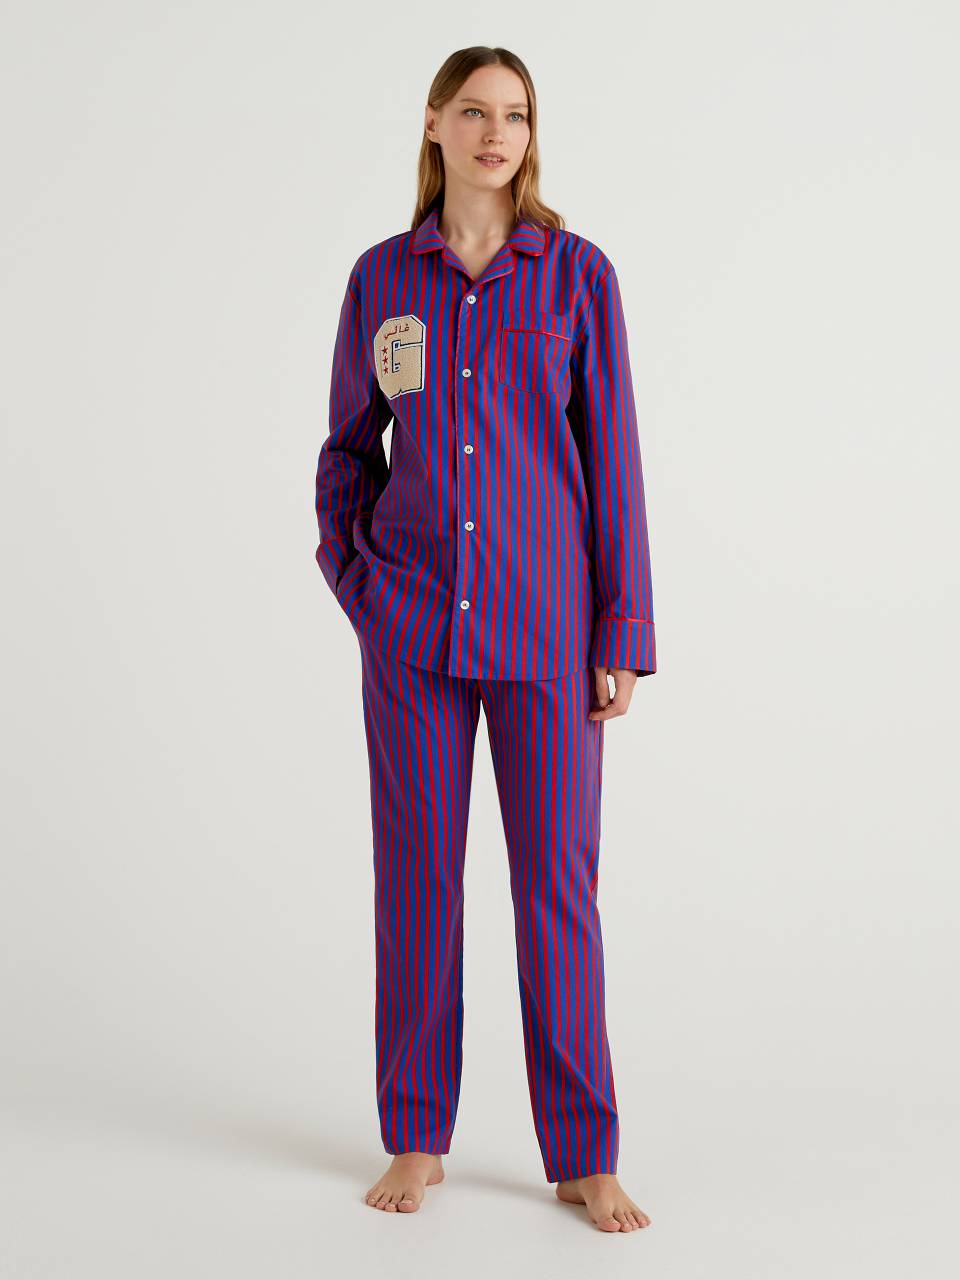 Benetton Striped pyjamas by Ghali. 1